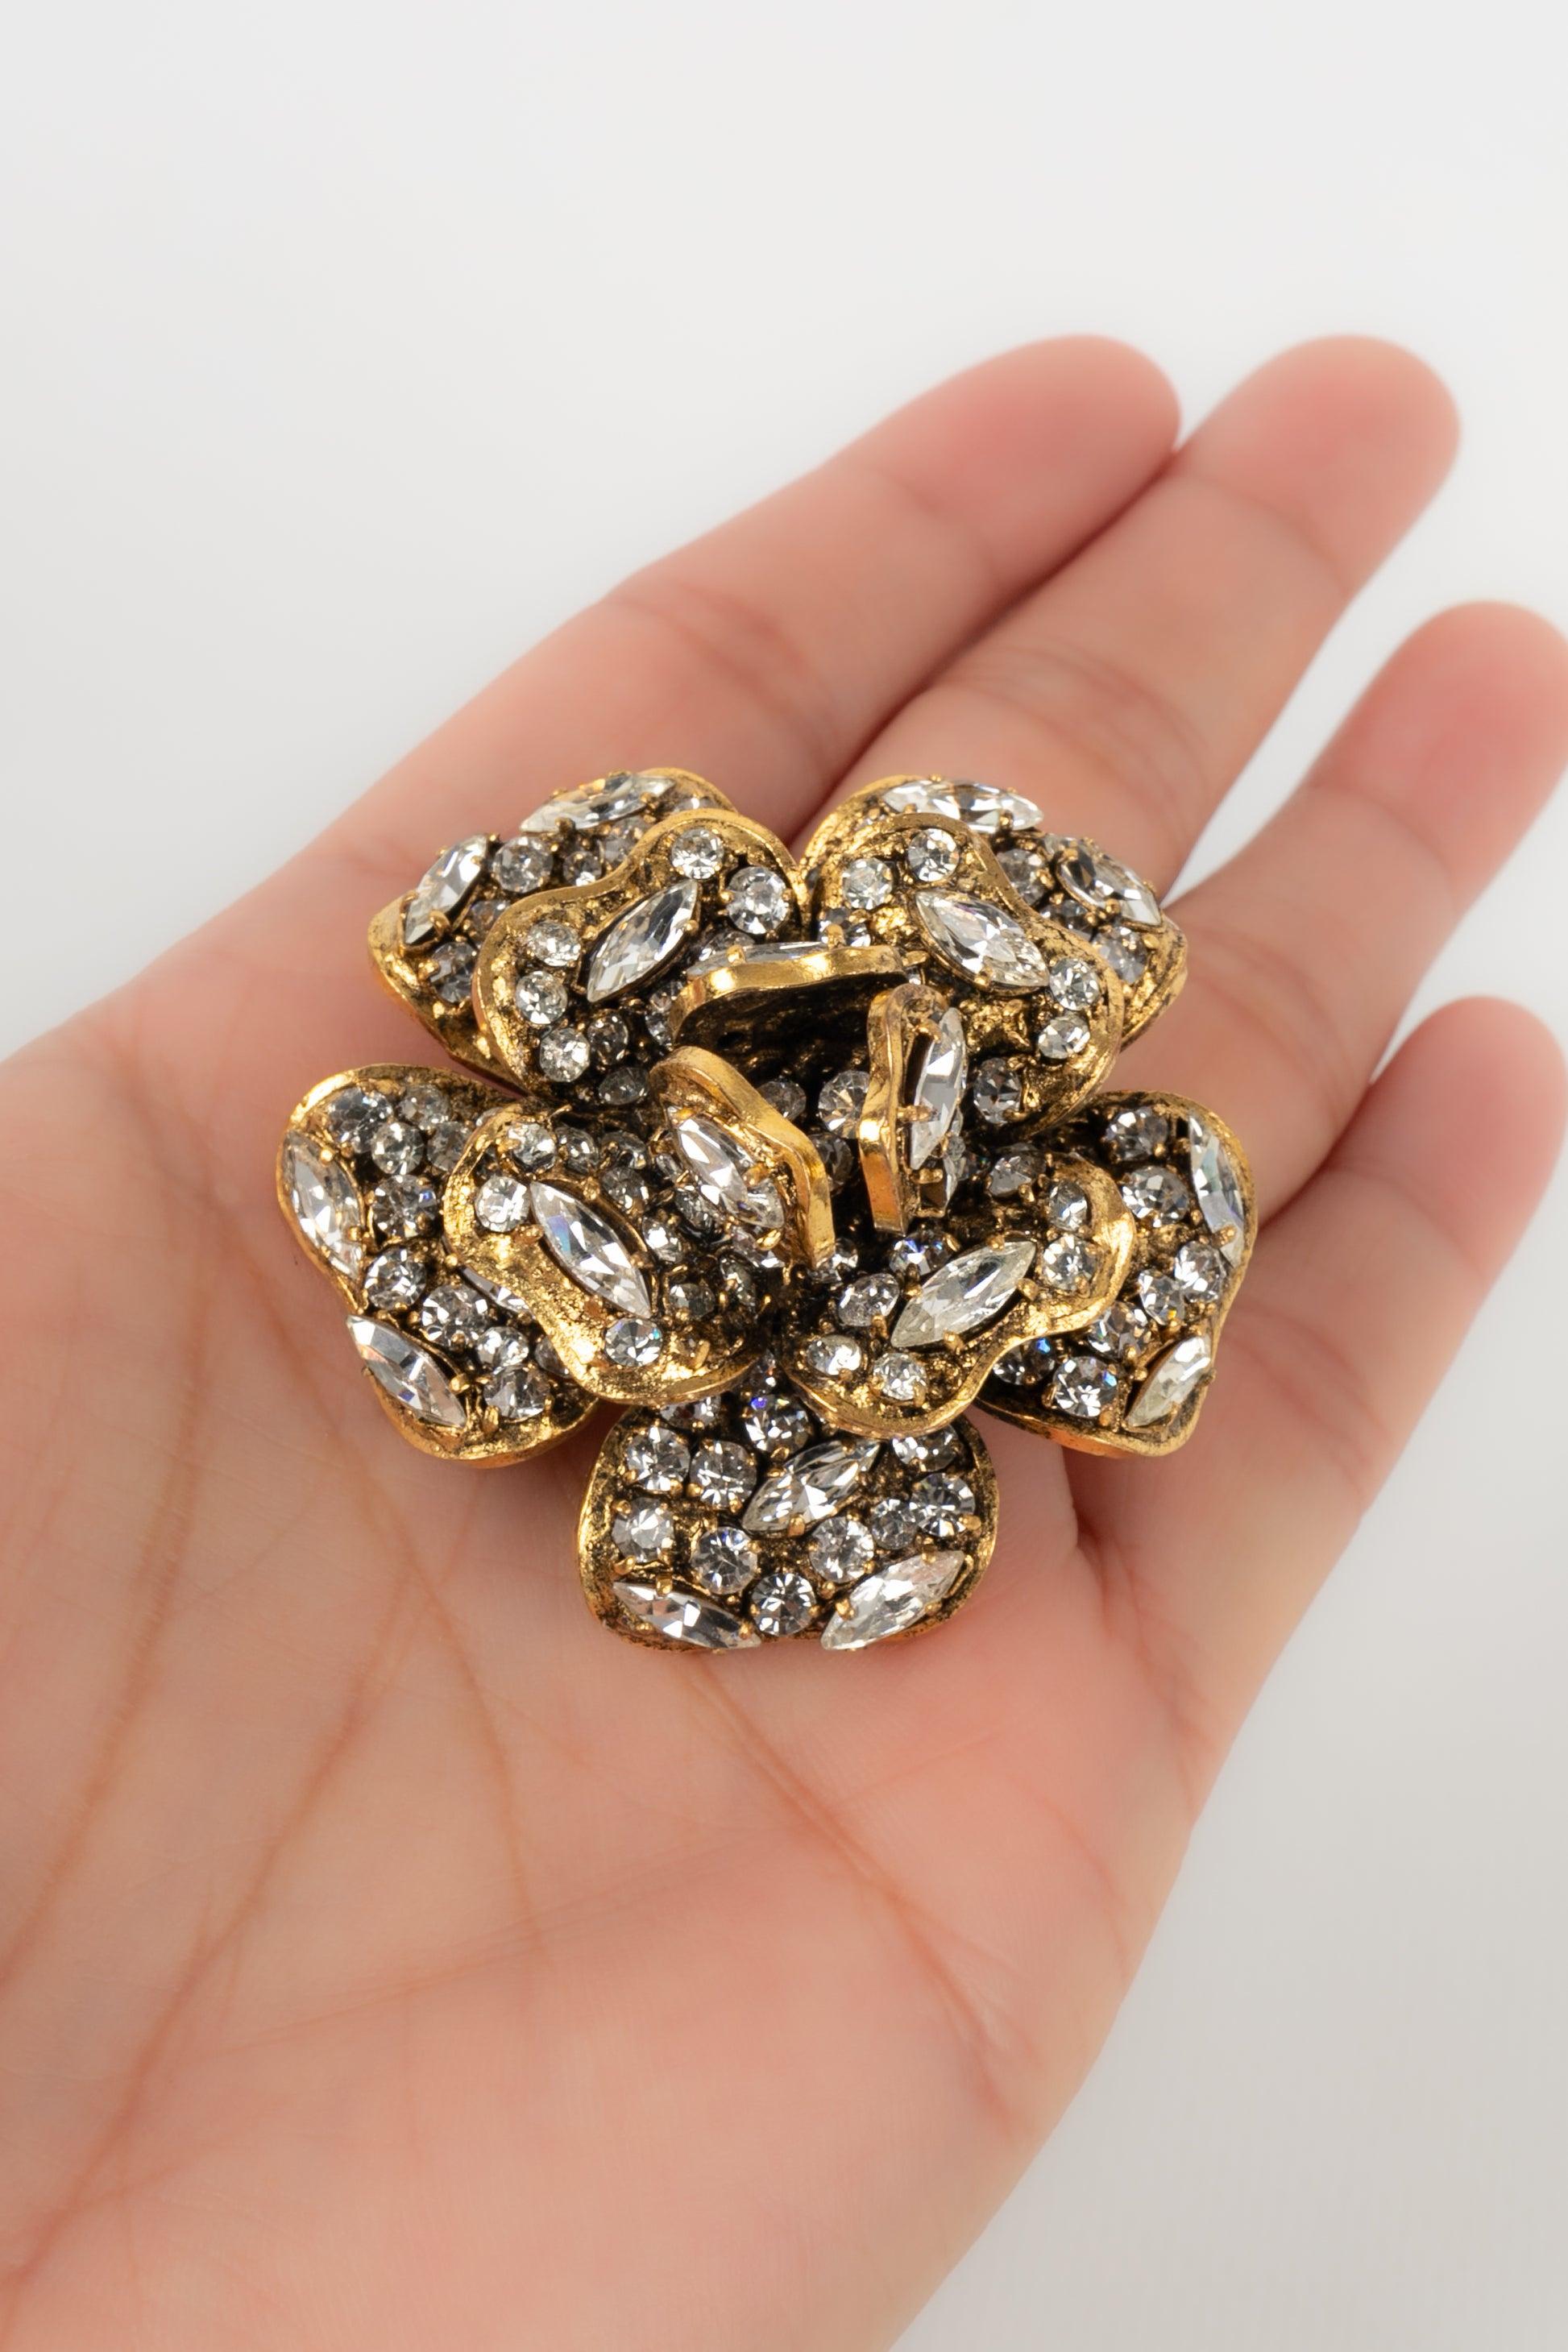 Chanel - (Made in France) Goldene Metallbrosche mit Strasssteinen verziert.

Zusätzliche Informationen:
Zustand: Sehr guter Zustand
Abmessungen: Höhe: 4,5 cm

Sellers Referenz: BRB45
